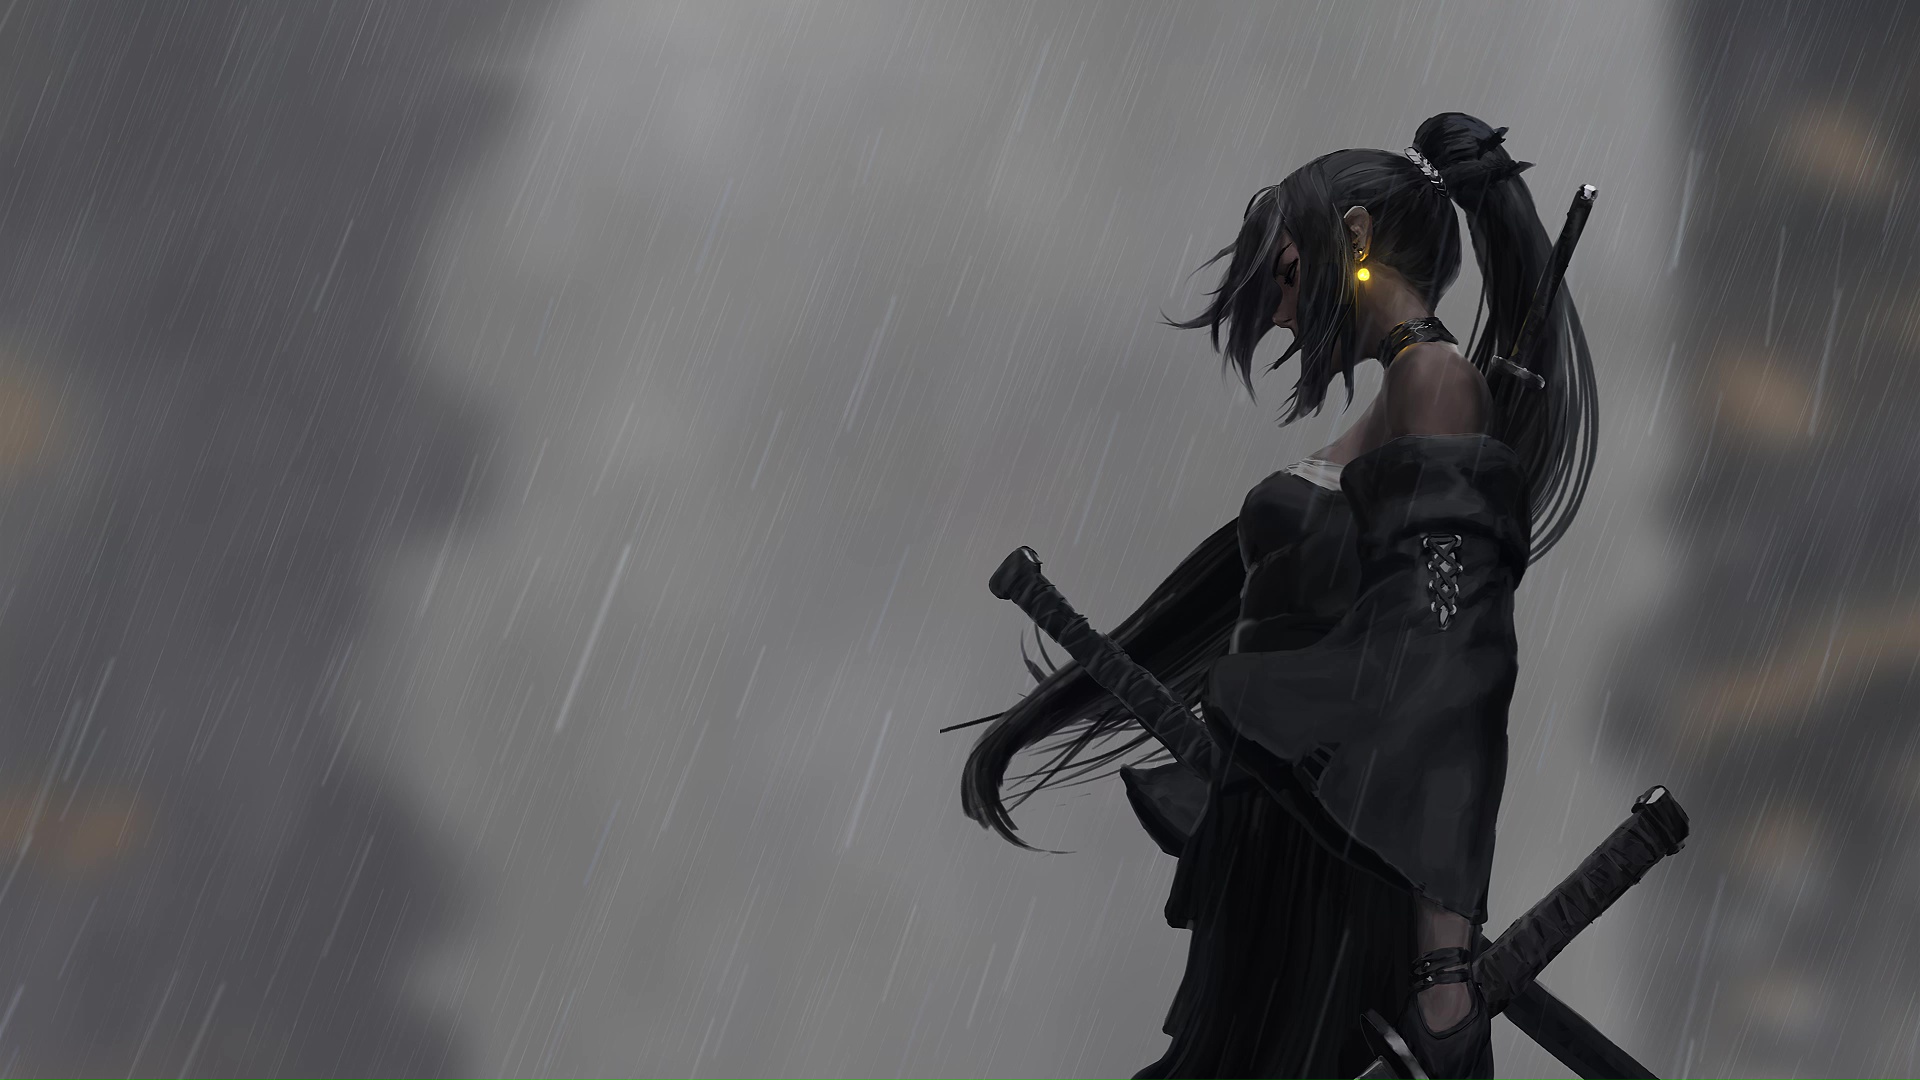 Samurai Girl In The Rain Live Wallpaper - MoeWalls